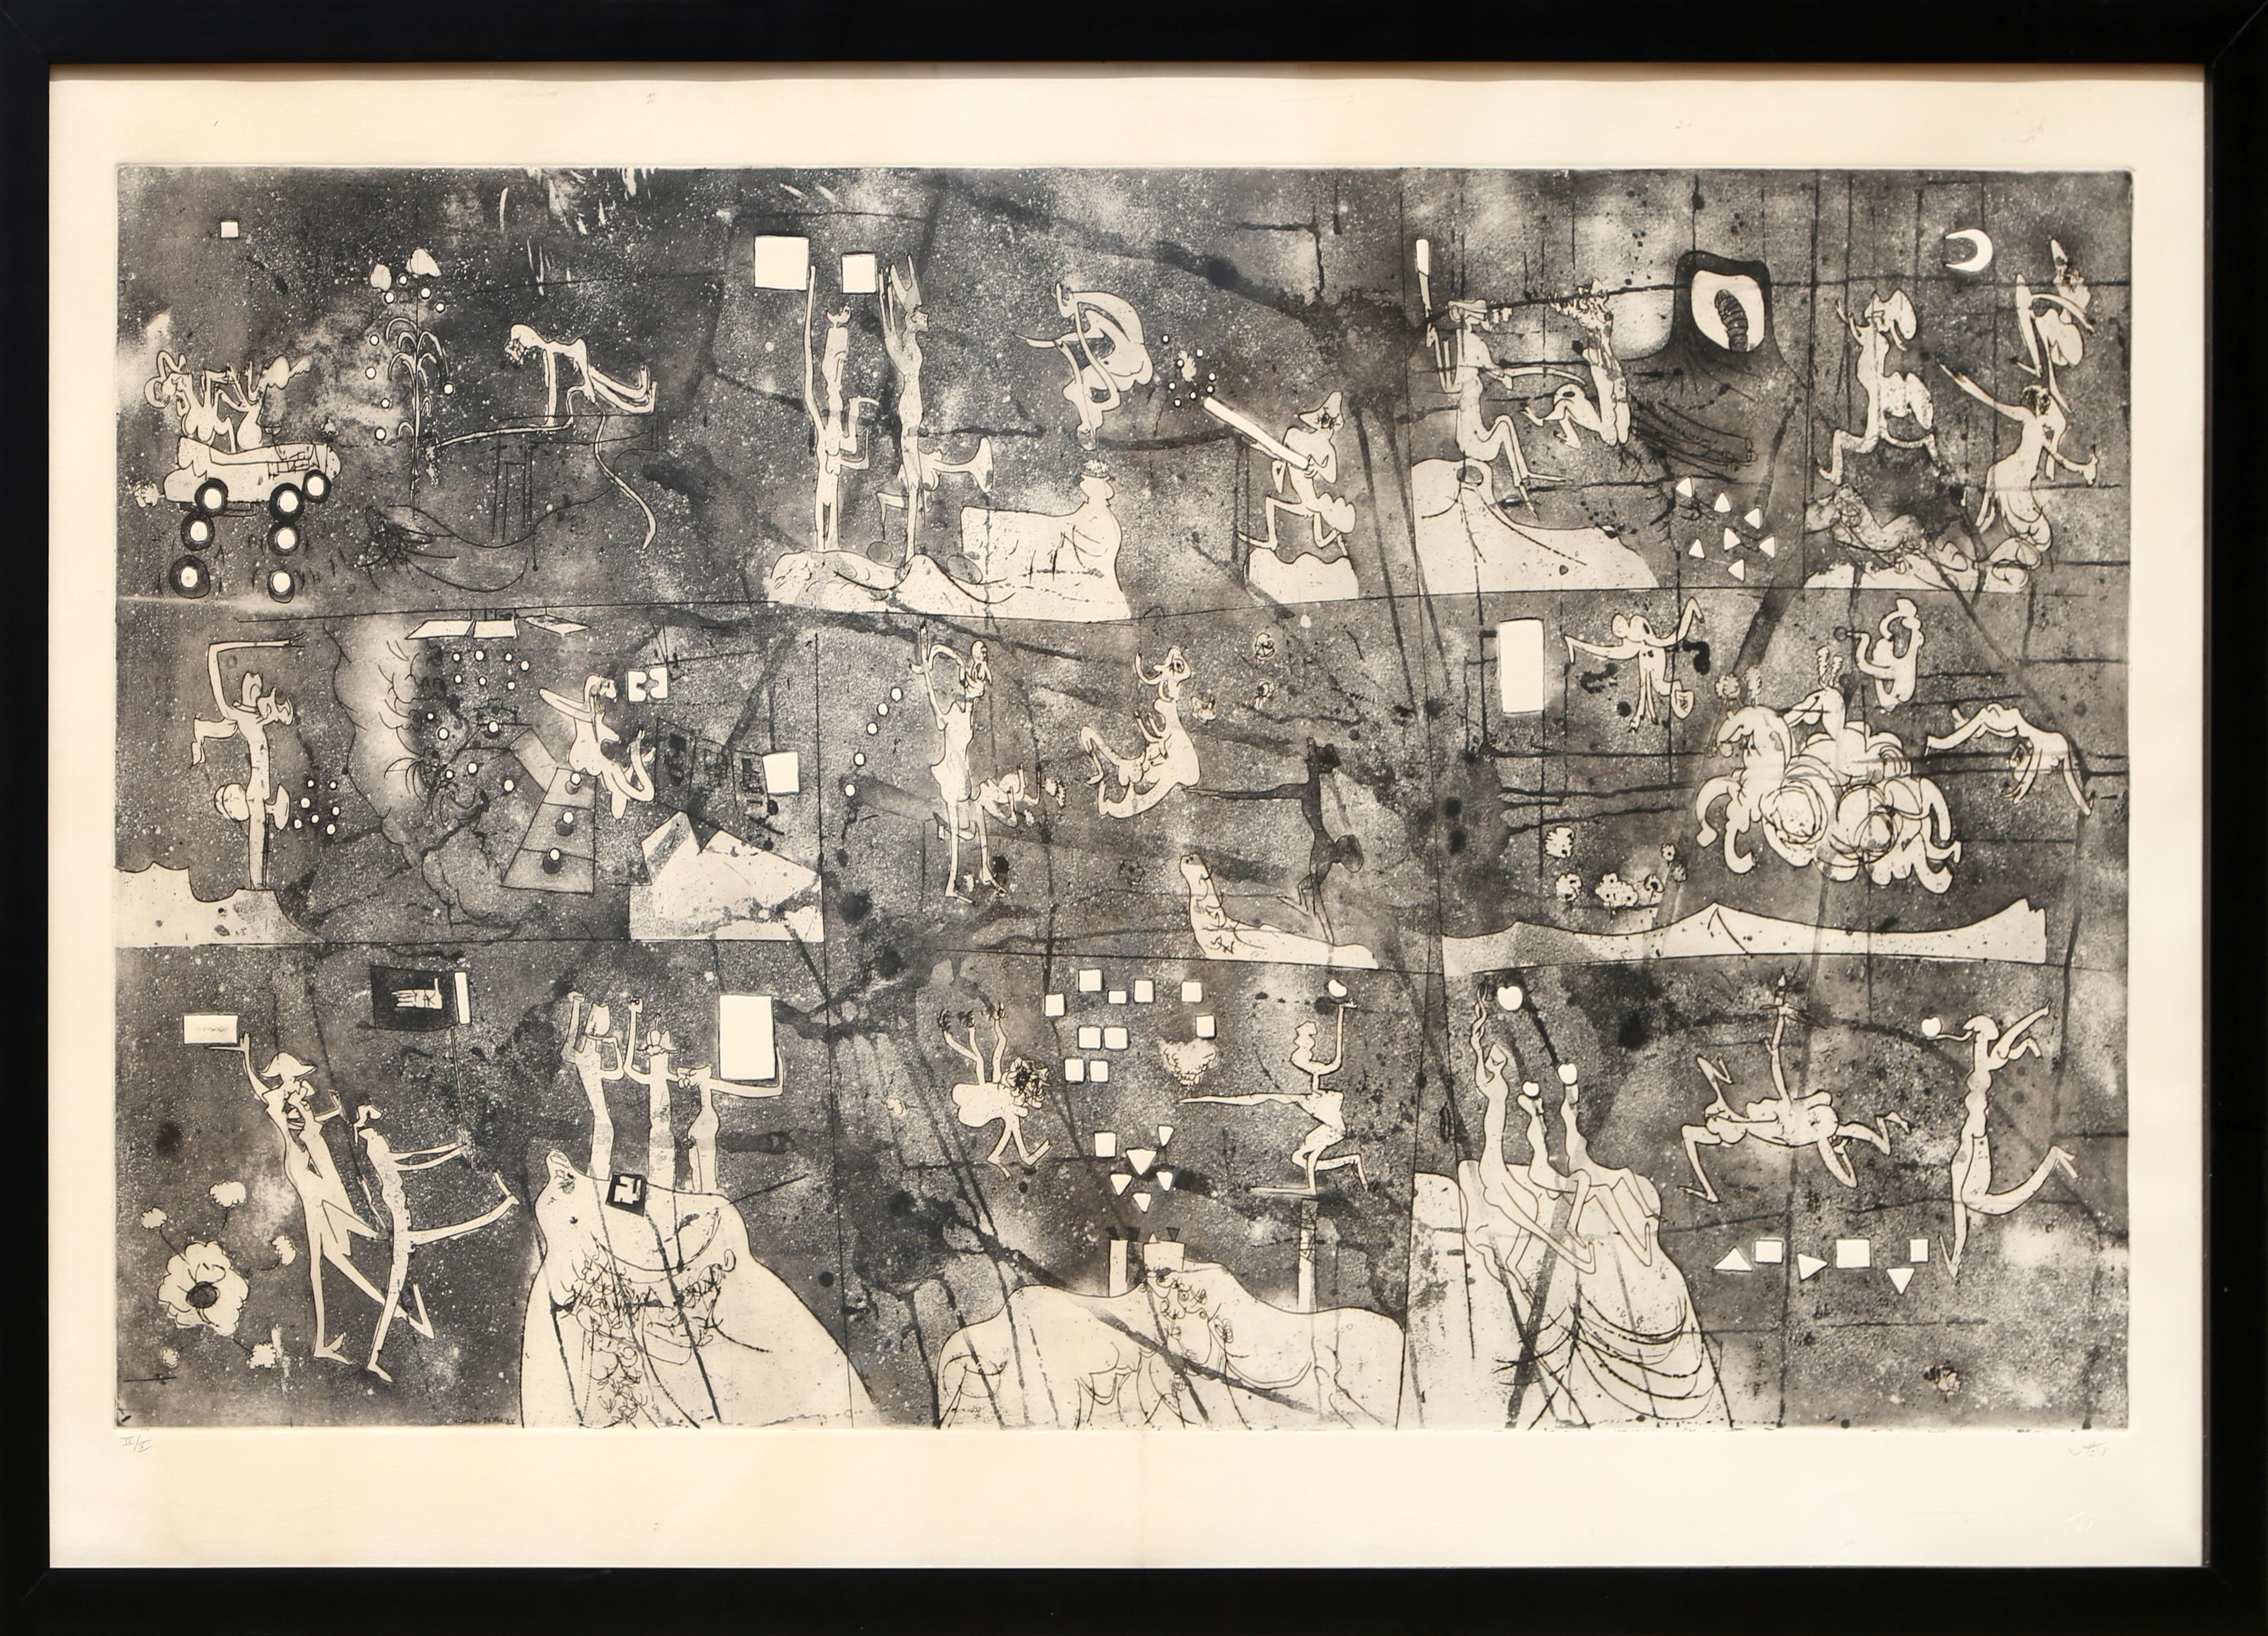 Une des premières œuvres à grande échelle de l'artiste chilien Roberto Matta. Dans cette œuvre surréaliste en noir et blanc, on peut voir différents personnages dans divers actes. Signé et numéroté au crayon. Cette édition ne fait pas partie de